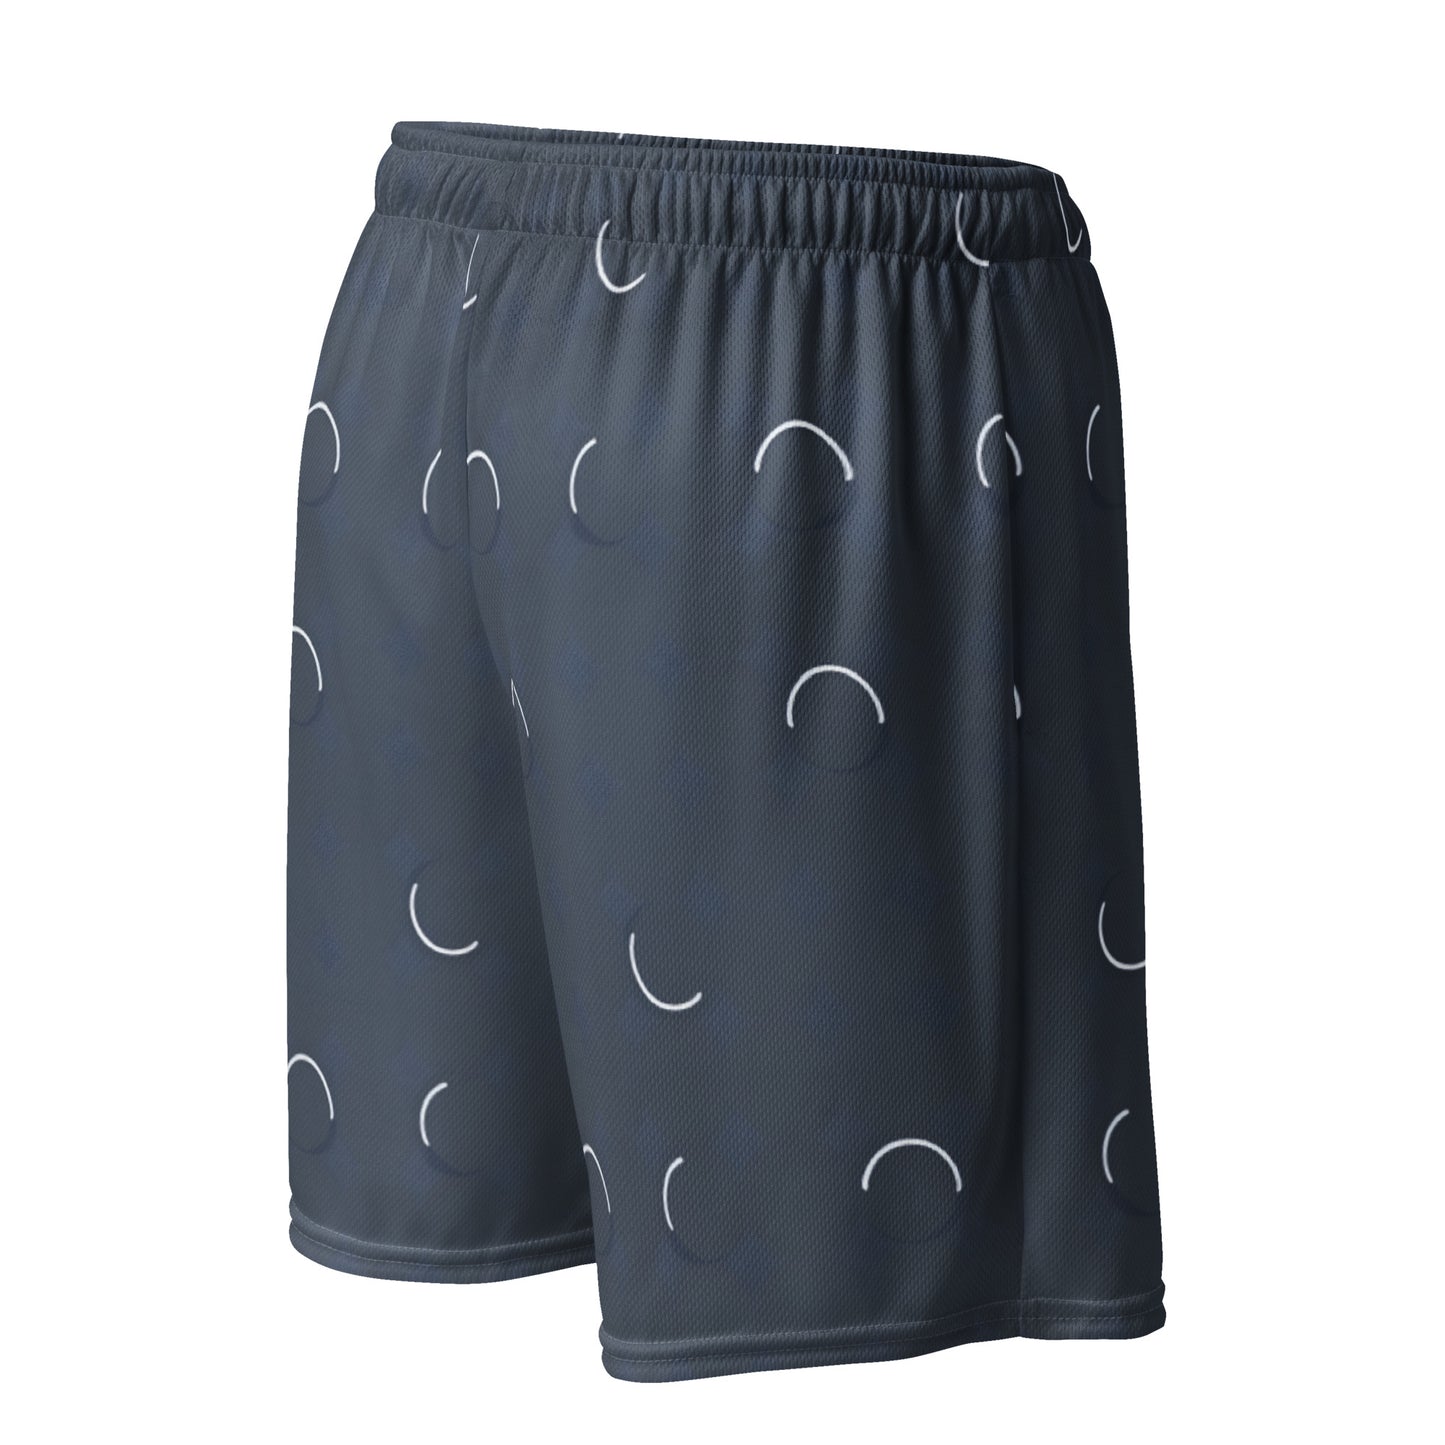 Unisex mesh shorts